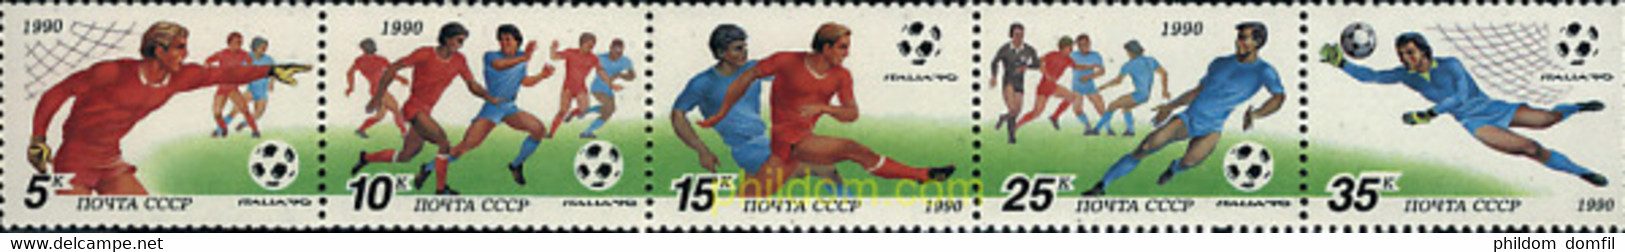 6650 MNH UNION SOVIETICA 1990 COPA DEL MUNDO DE FUTBOL. ITALIA-90 - Collezioni